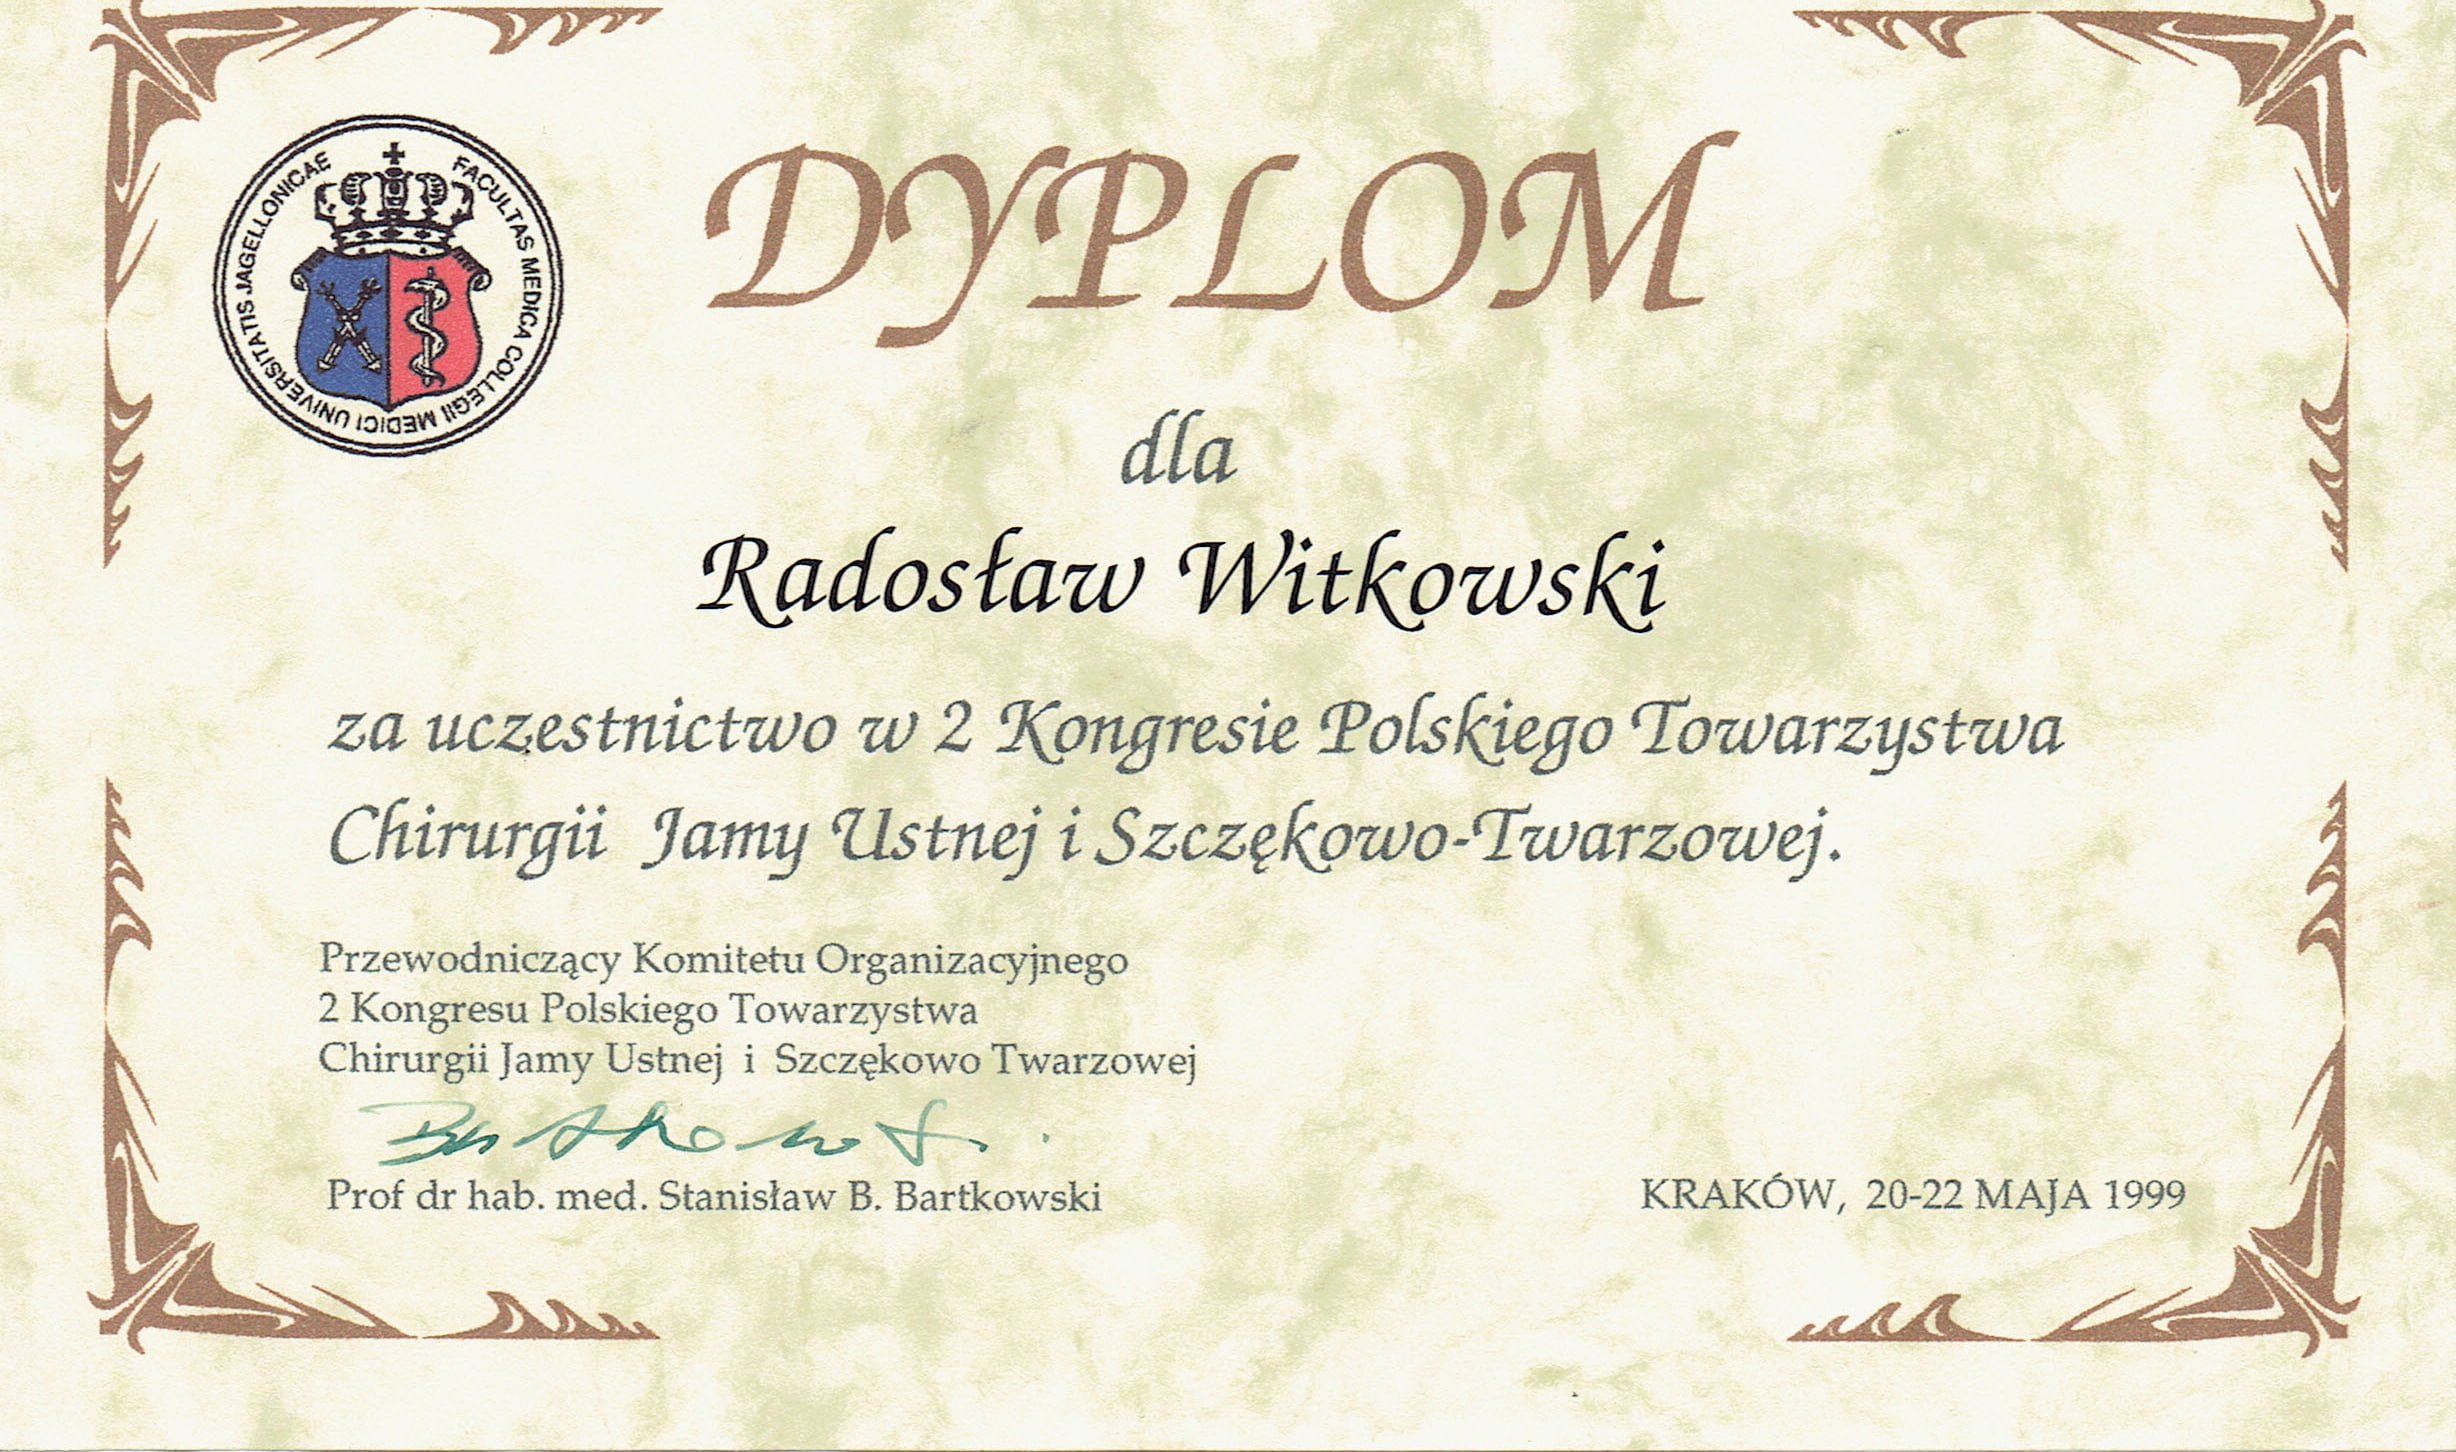 Radosław Witkowski certyfikat 20